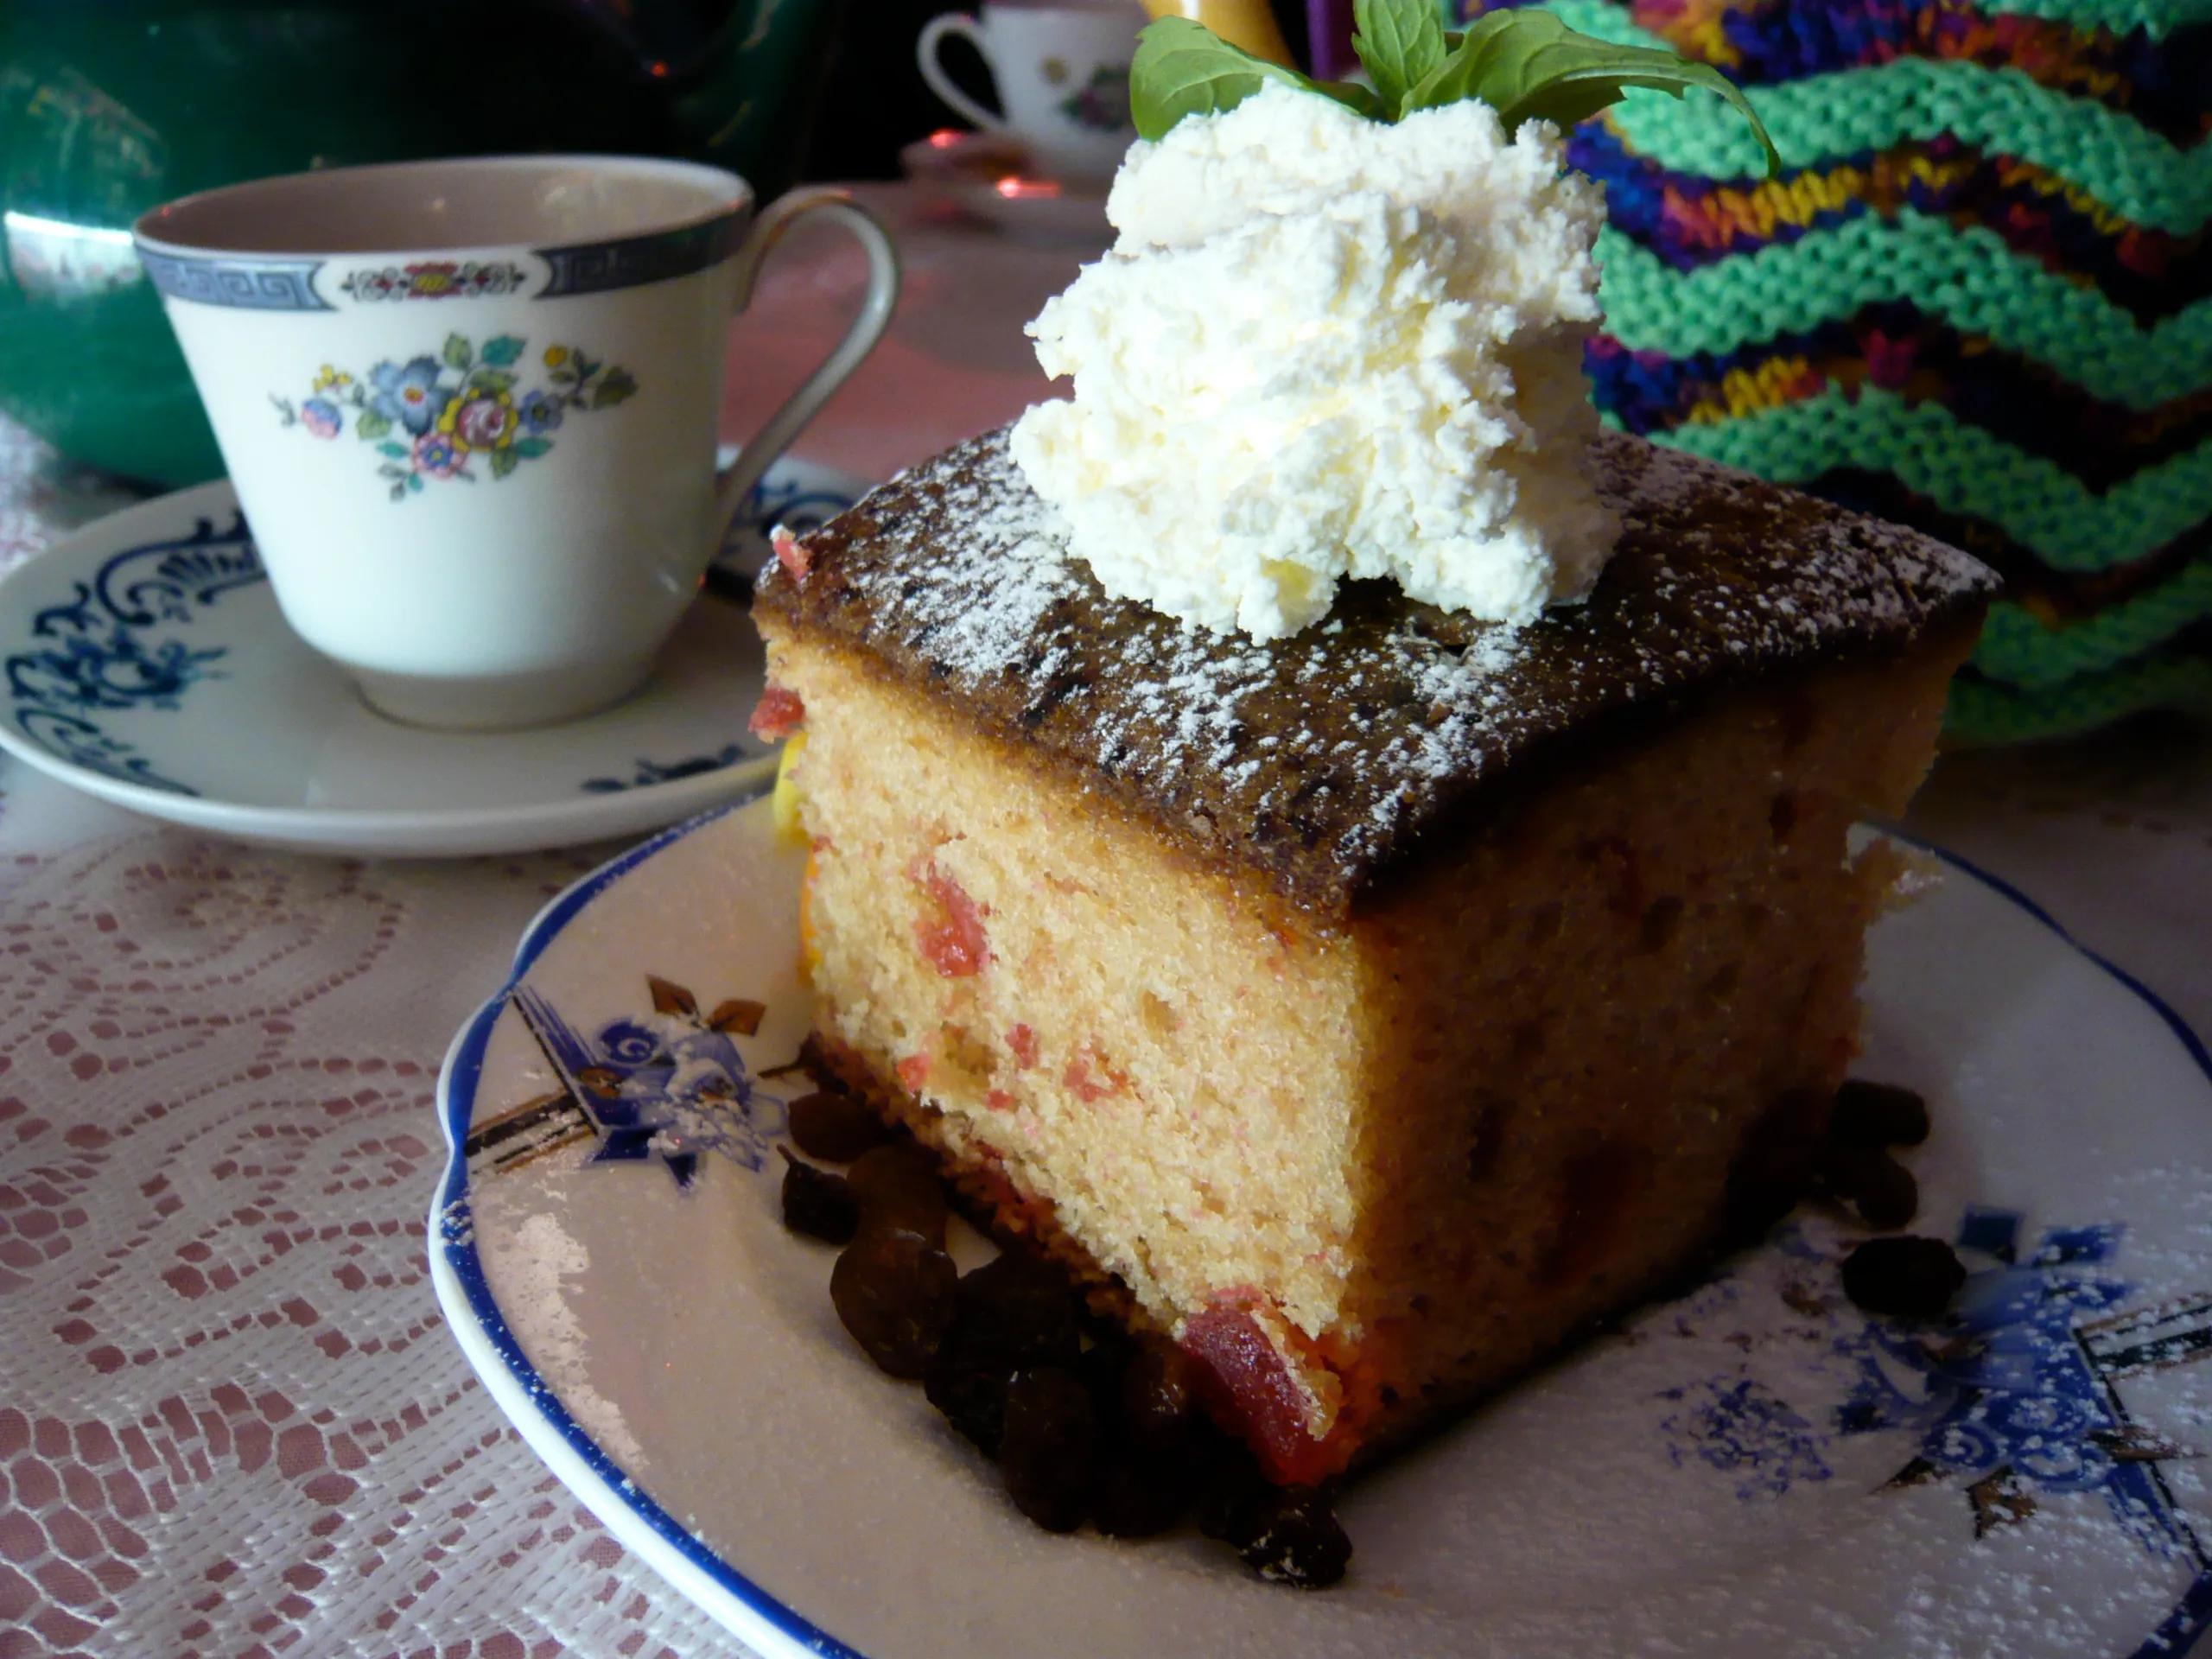 File:Cherry madeira cake.jpg - Wikimedia Commons